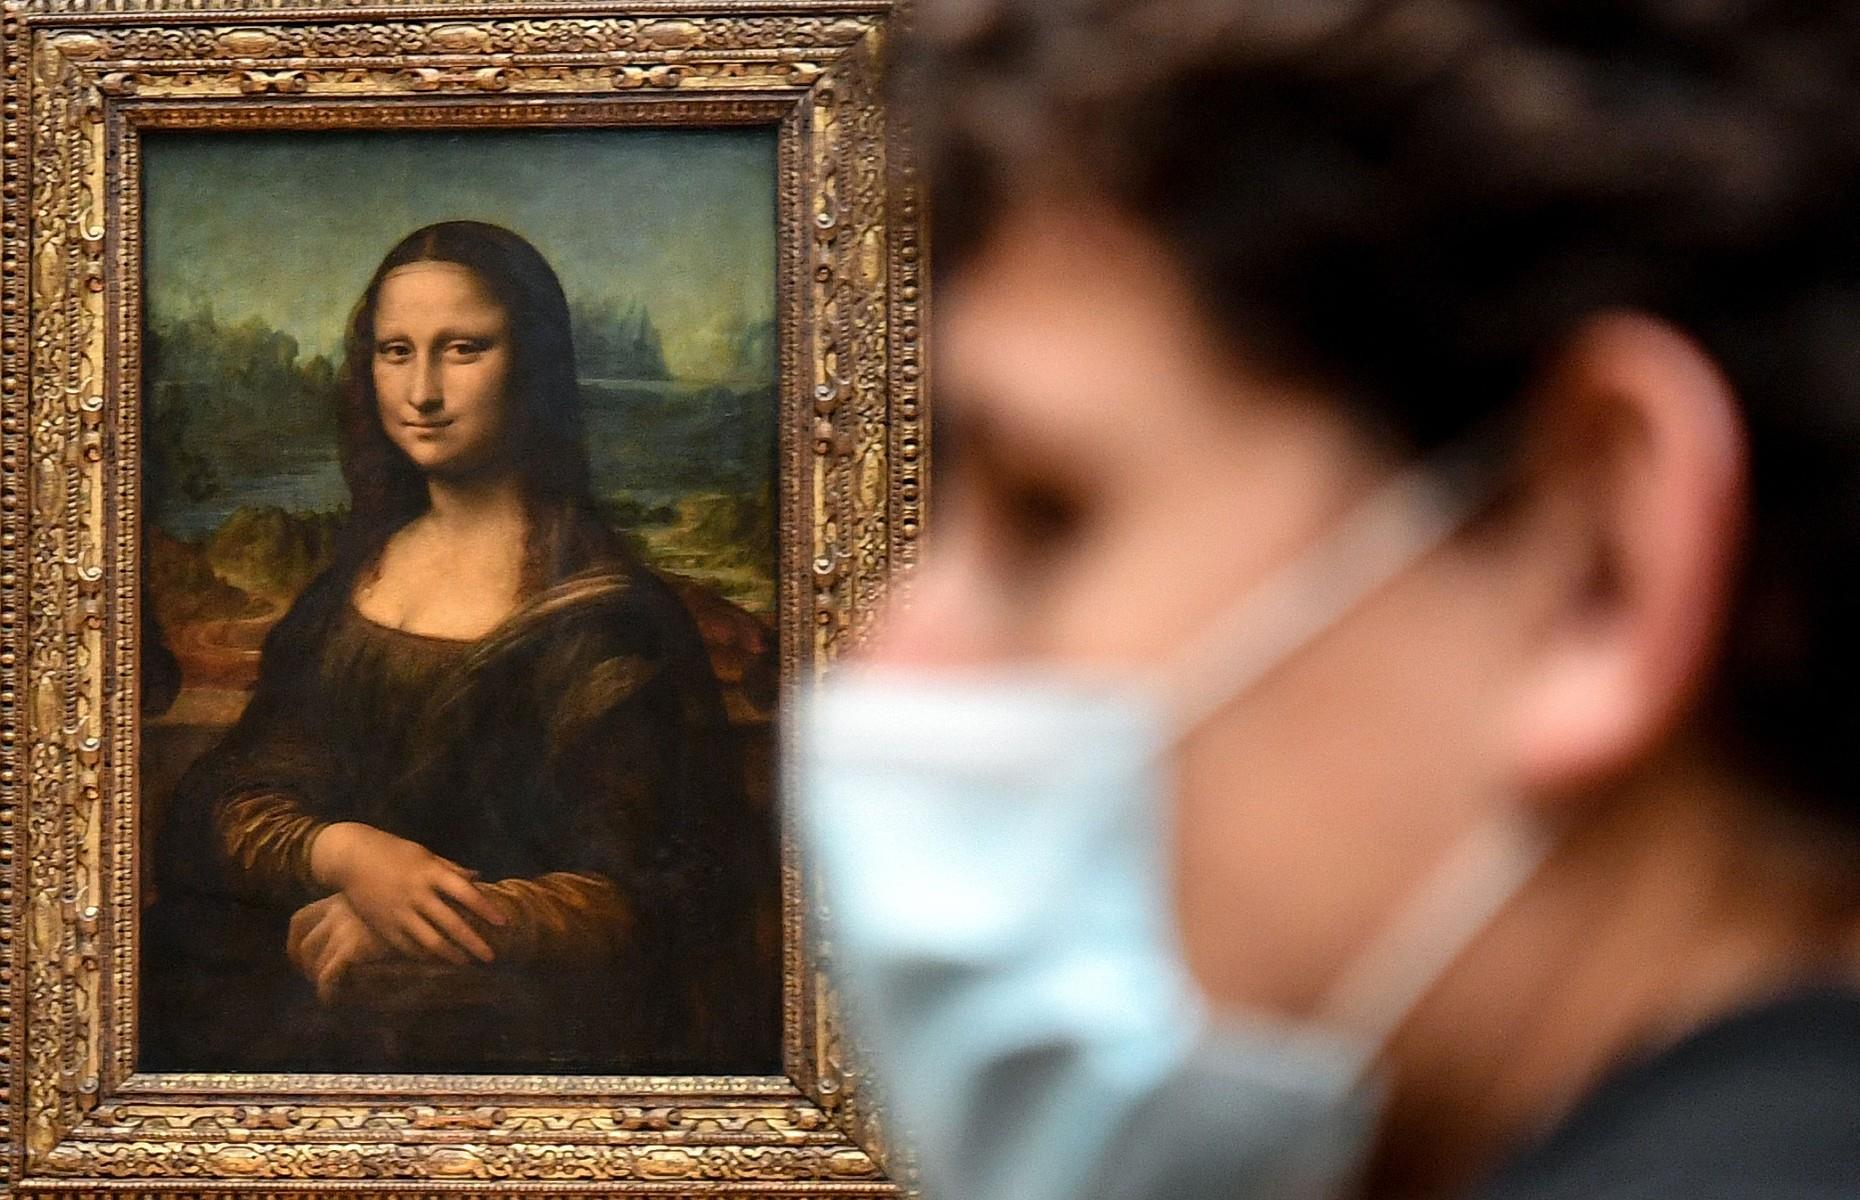 Who is the Mona Lisa?